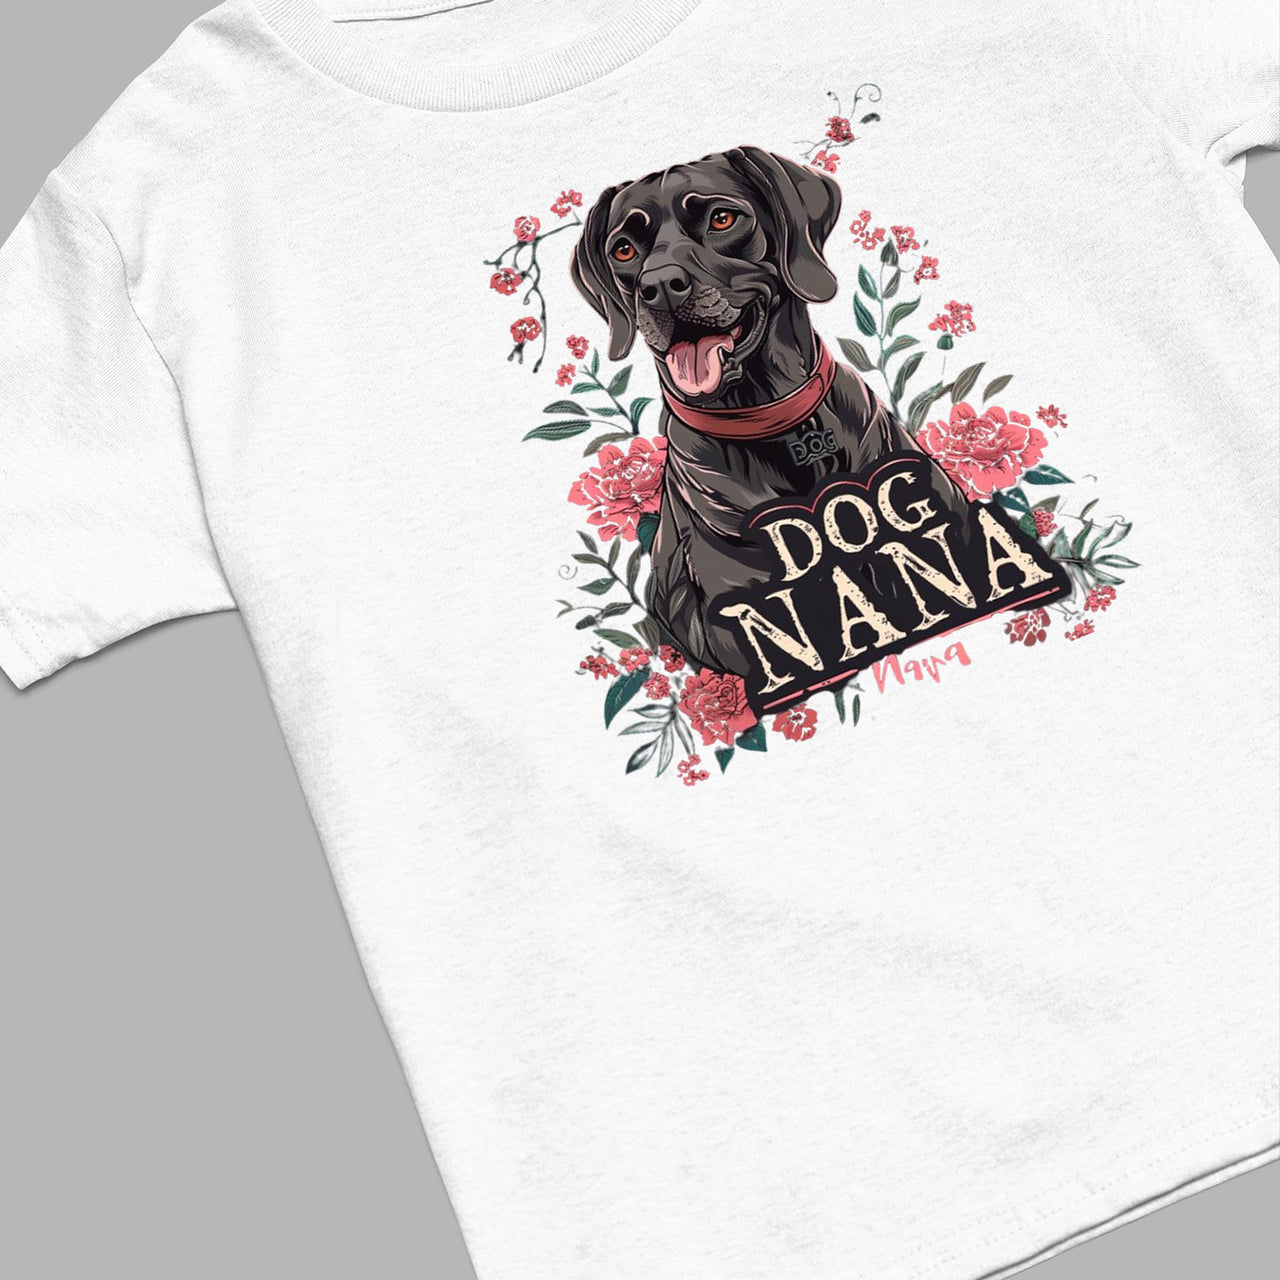 Labrador Retriever Dog T-shirt, Pet Lover Shirt, Dog Lover Shirt, Dog Nana T-Shirt, Dog Owner Shirt, Gift For Dog Grandma, Funny Dog Shirts, Women Dog T-Shirt, Mother's Day Gift, Dog Lover Wife Gifts, Dog Shirt